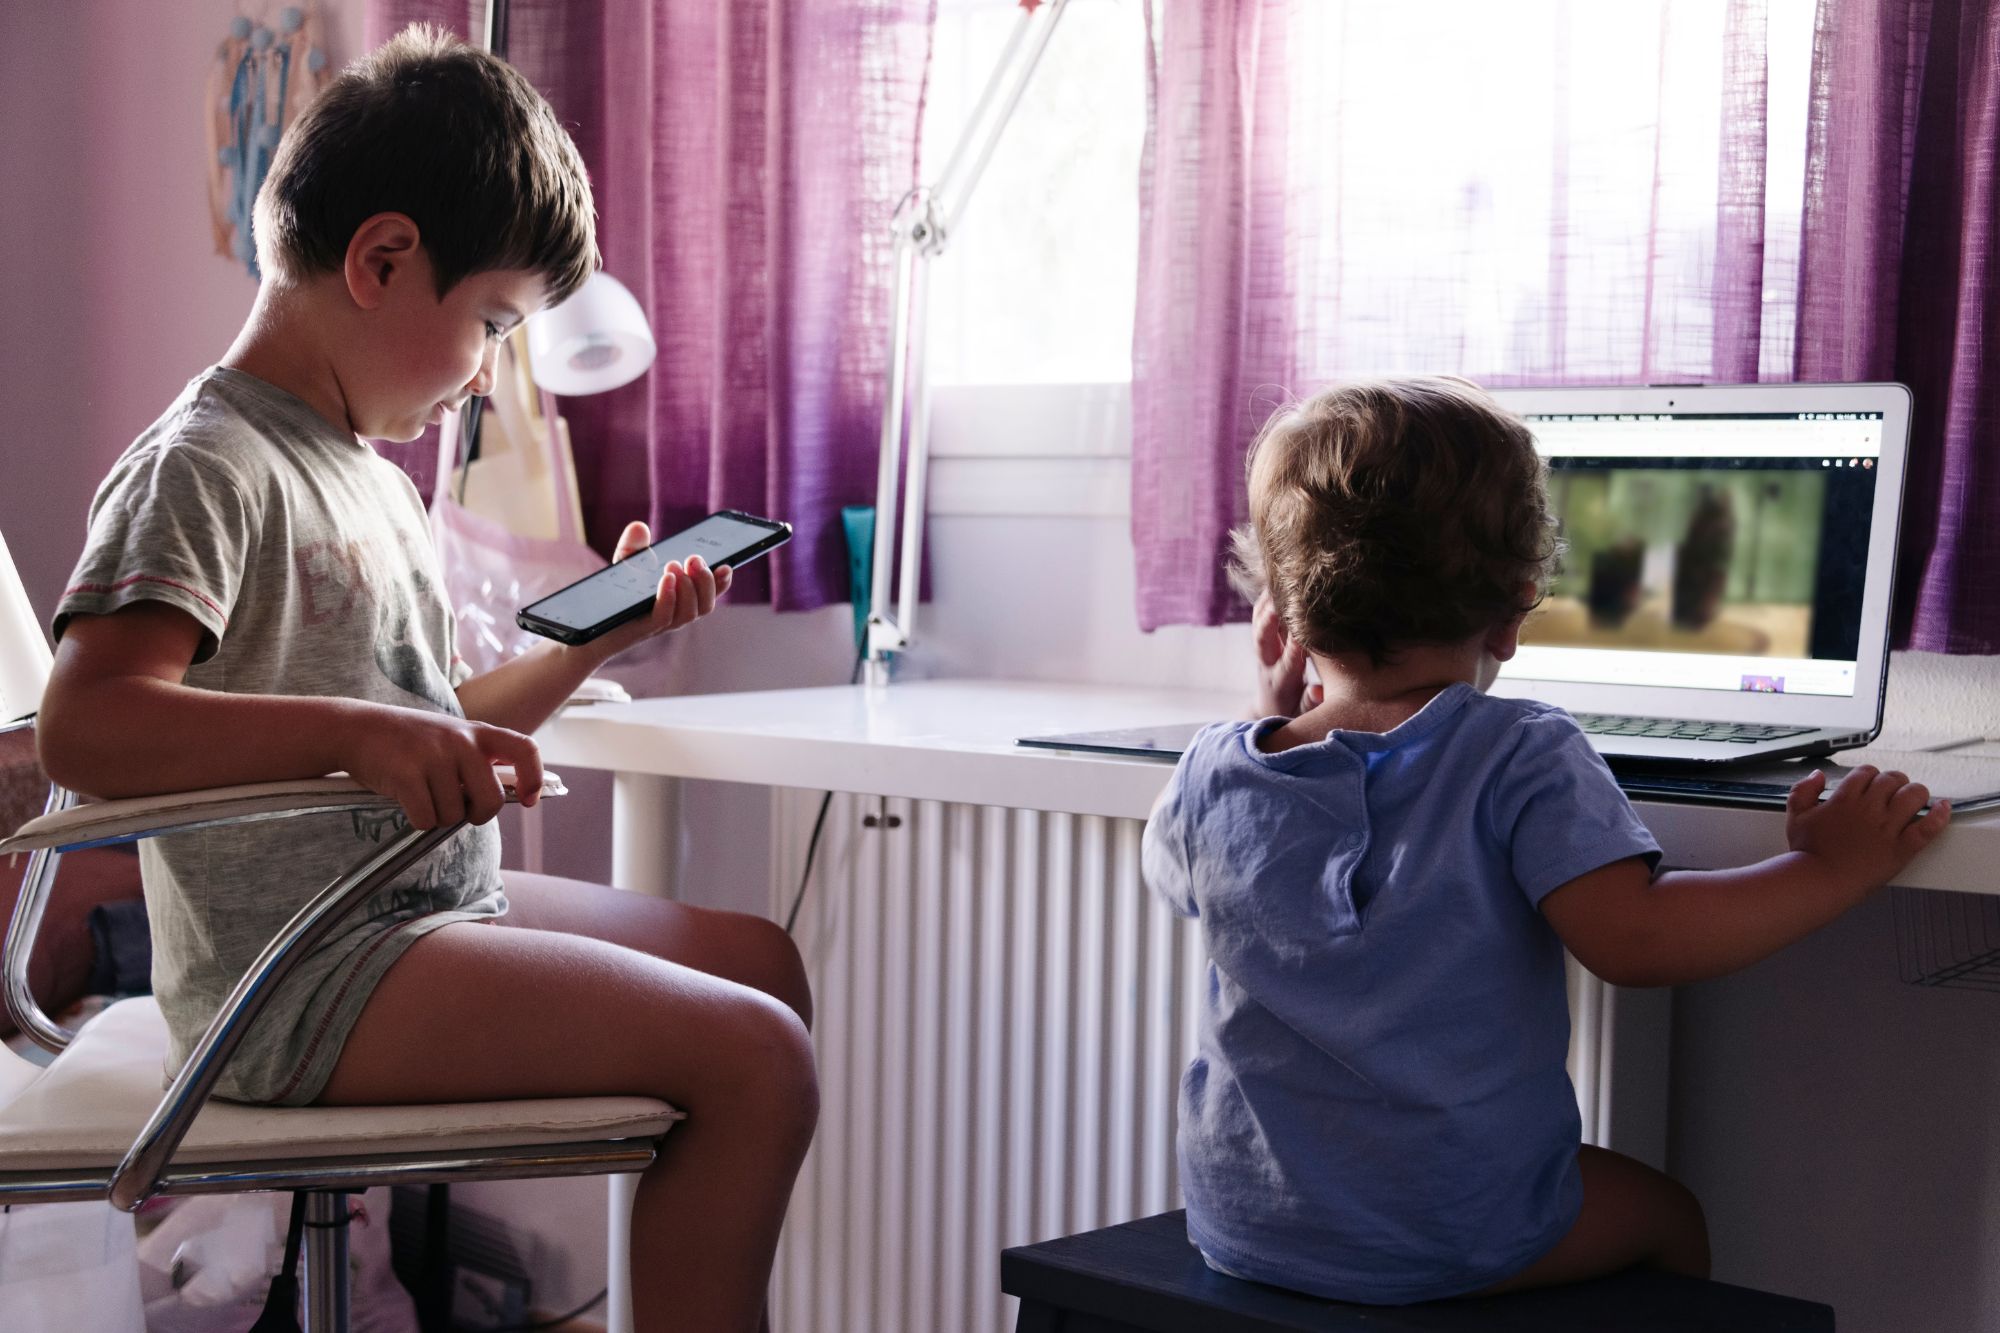 L’infanzia in Toscana e i rischi digitali, lo studio di Save the Children